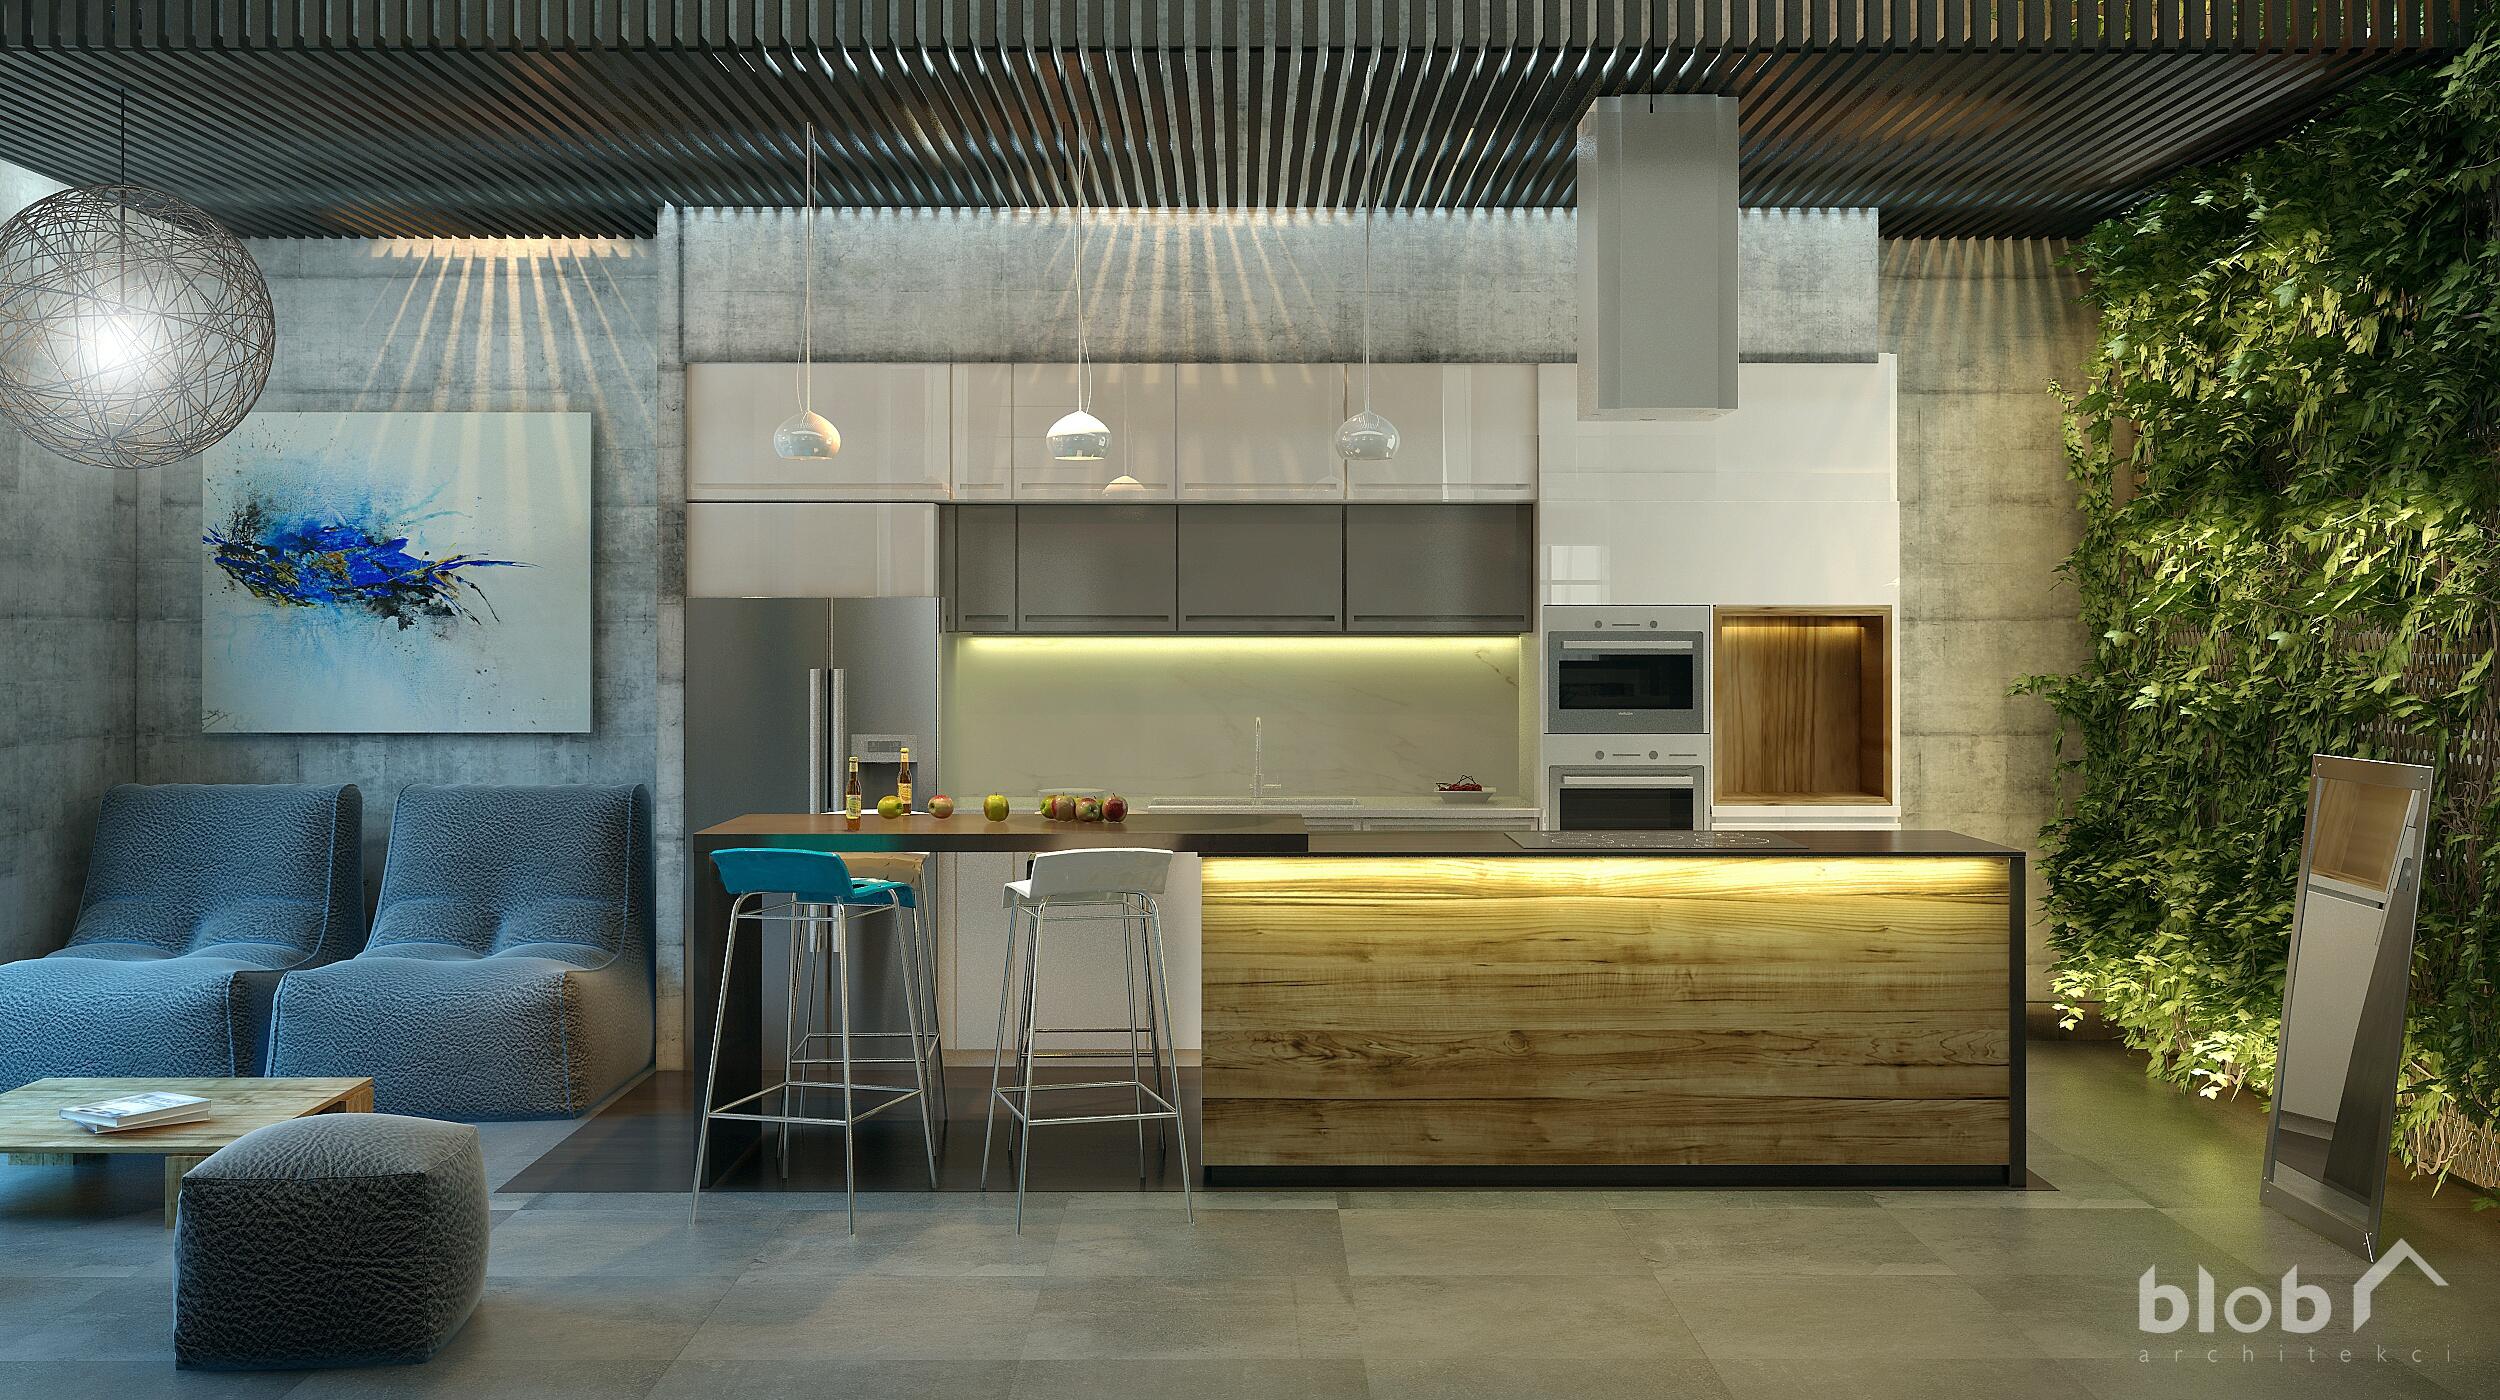 mieszkanie w stylu loftowym, BLOB Architekci, Magdalena Lorek-Biela, kuchnia, II miejsce w konkursie Siemens